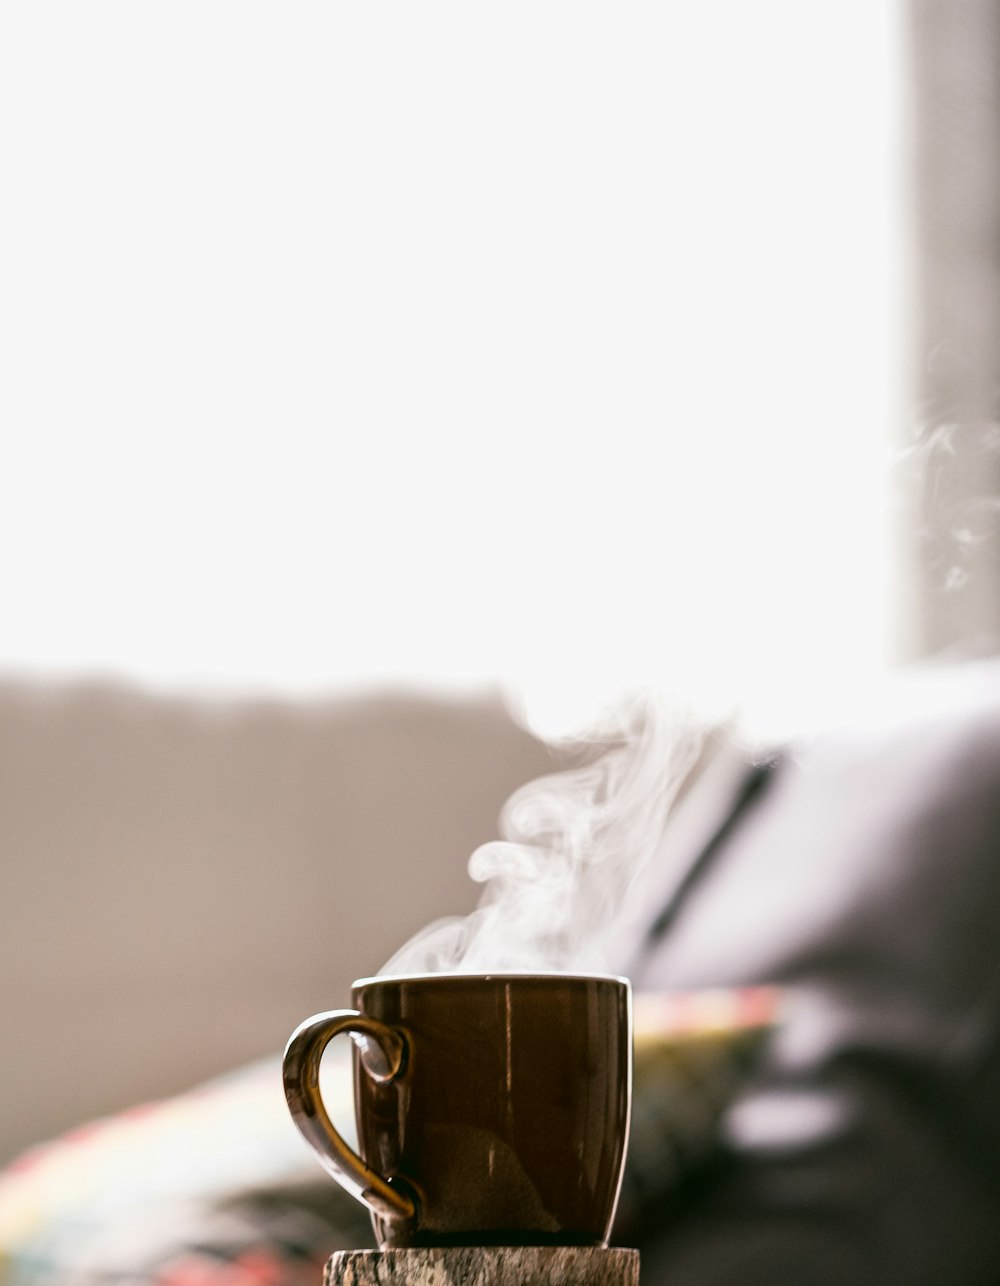 fotografia a fuoco superficiale di caffè caldo in tazza con piattino